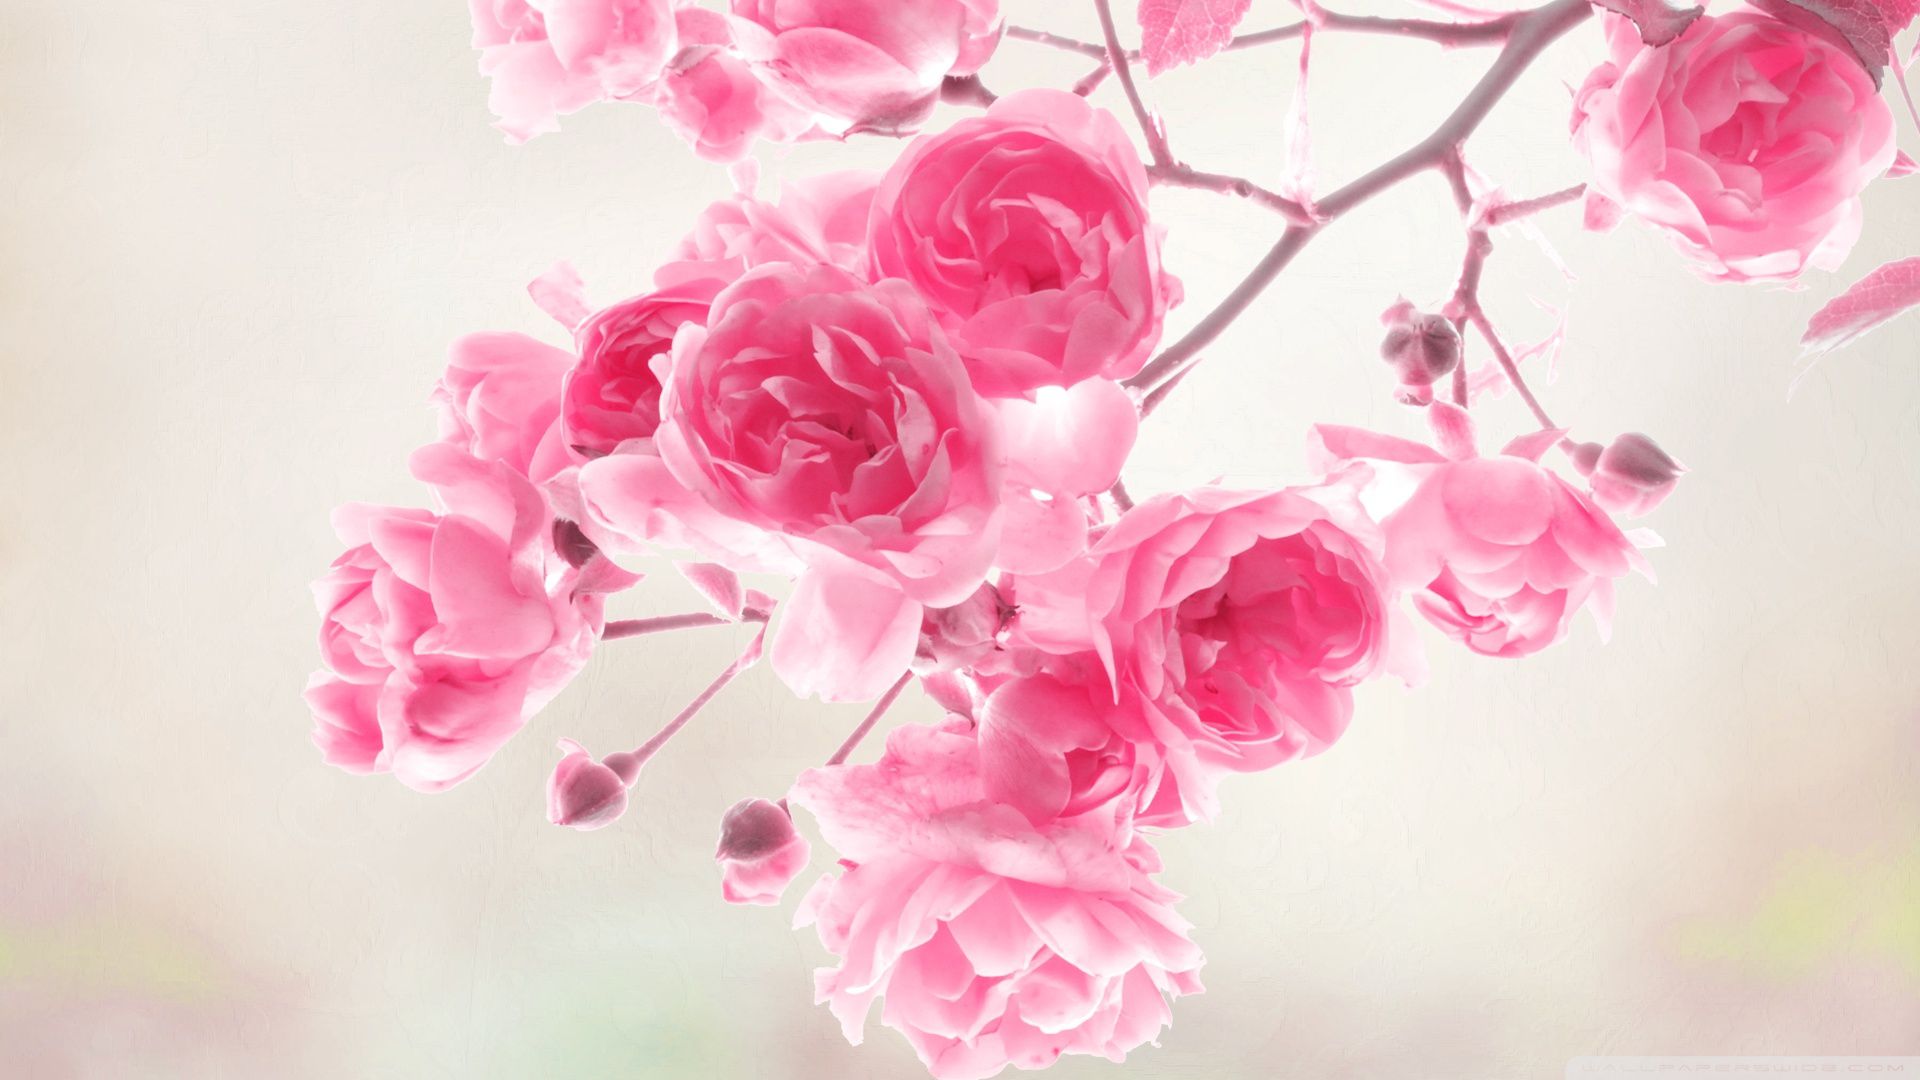 Pink Roses Desktop Wallpaper, High Definition, High Quality, Widescreen